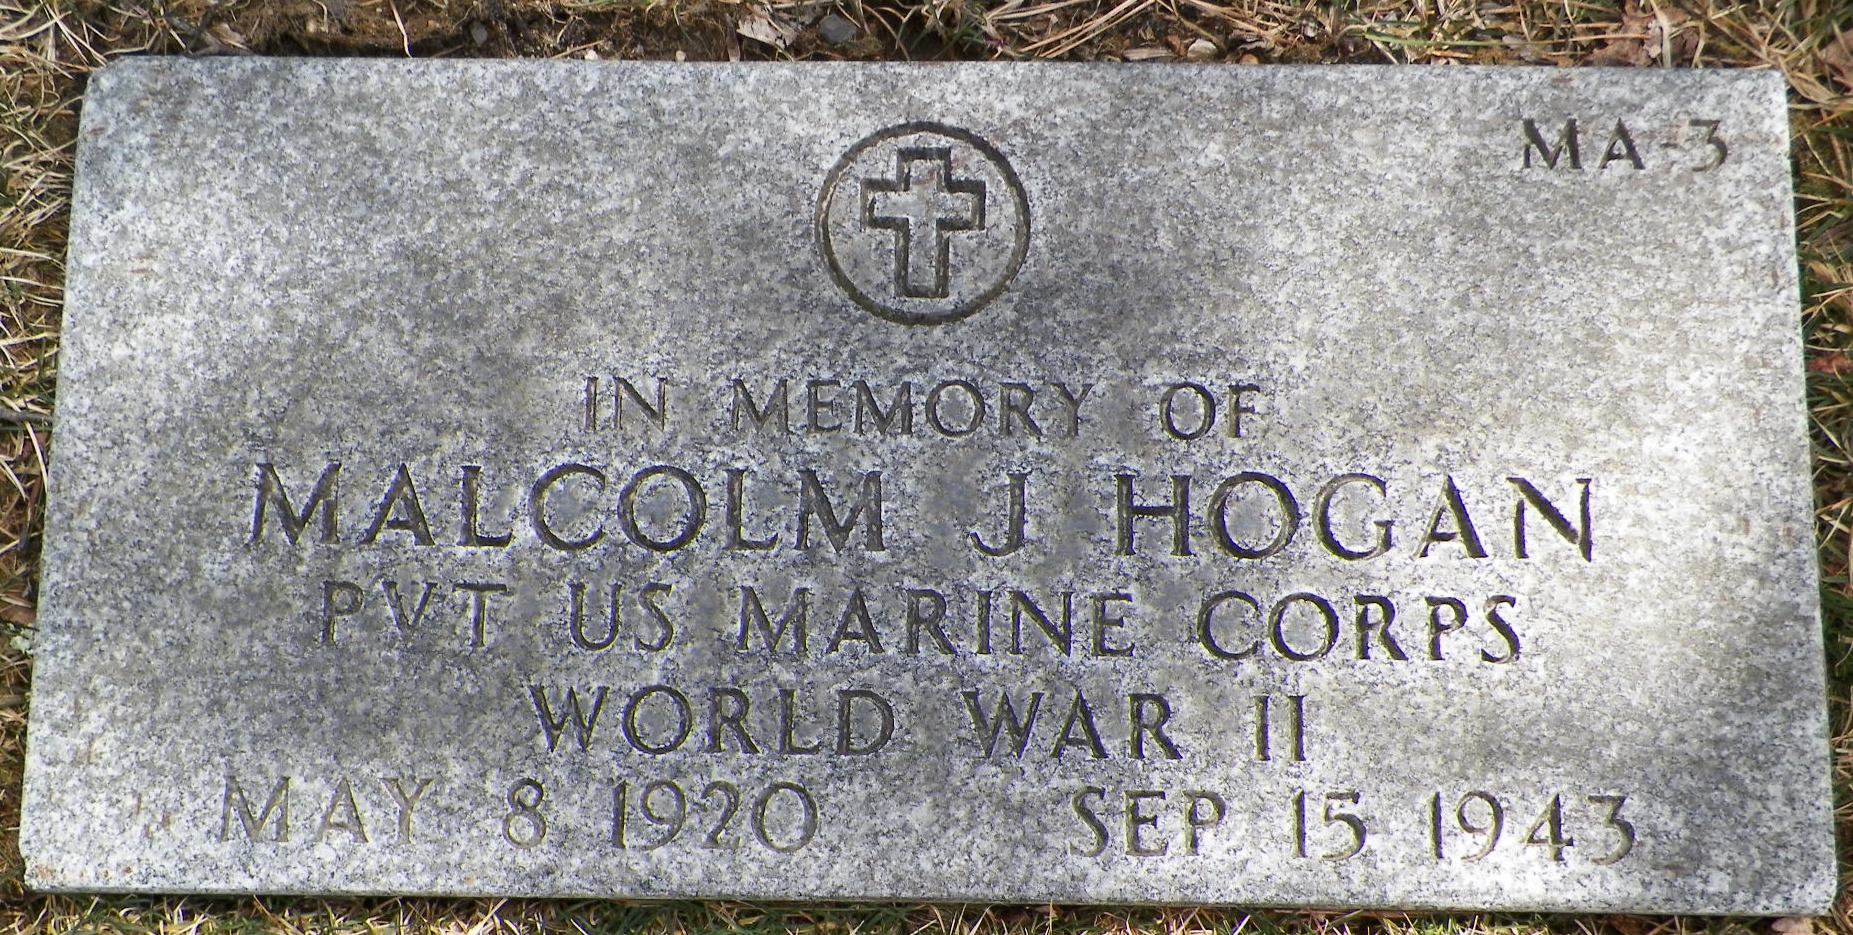 M. Hogan (Memorial)